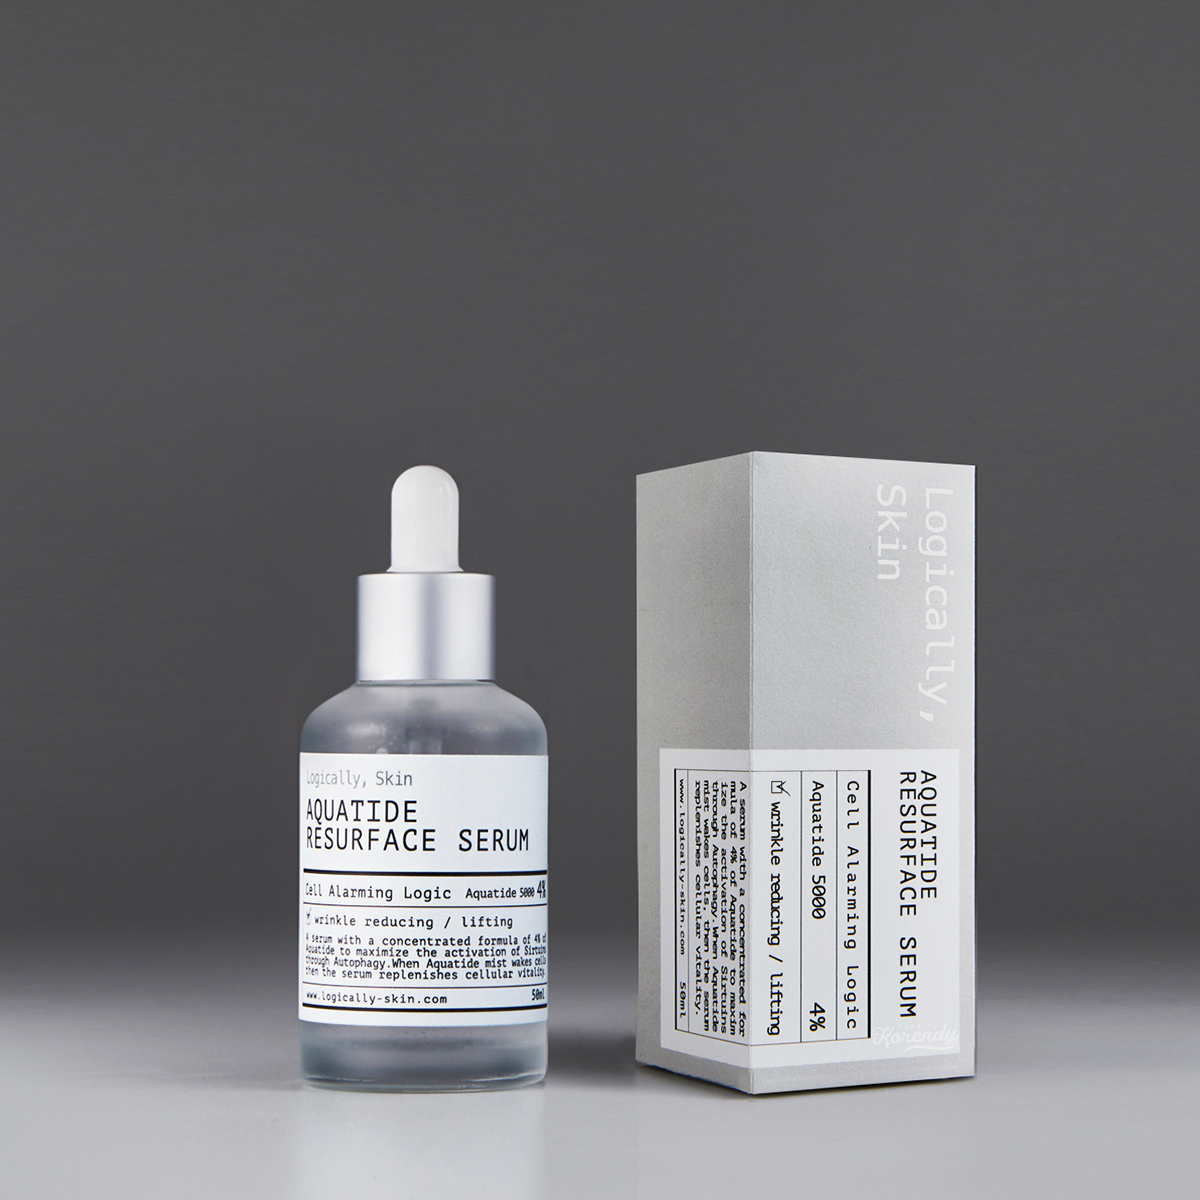 Logically Skin - Aquatide Resurface Serum (Kırışıklık Karşıtı Neme Doyuran Patentli Peptit Serumu) 50ml